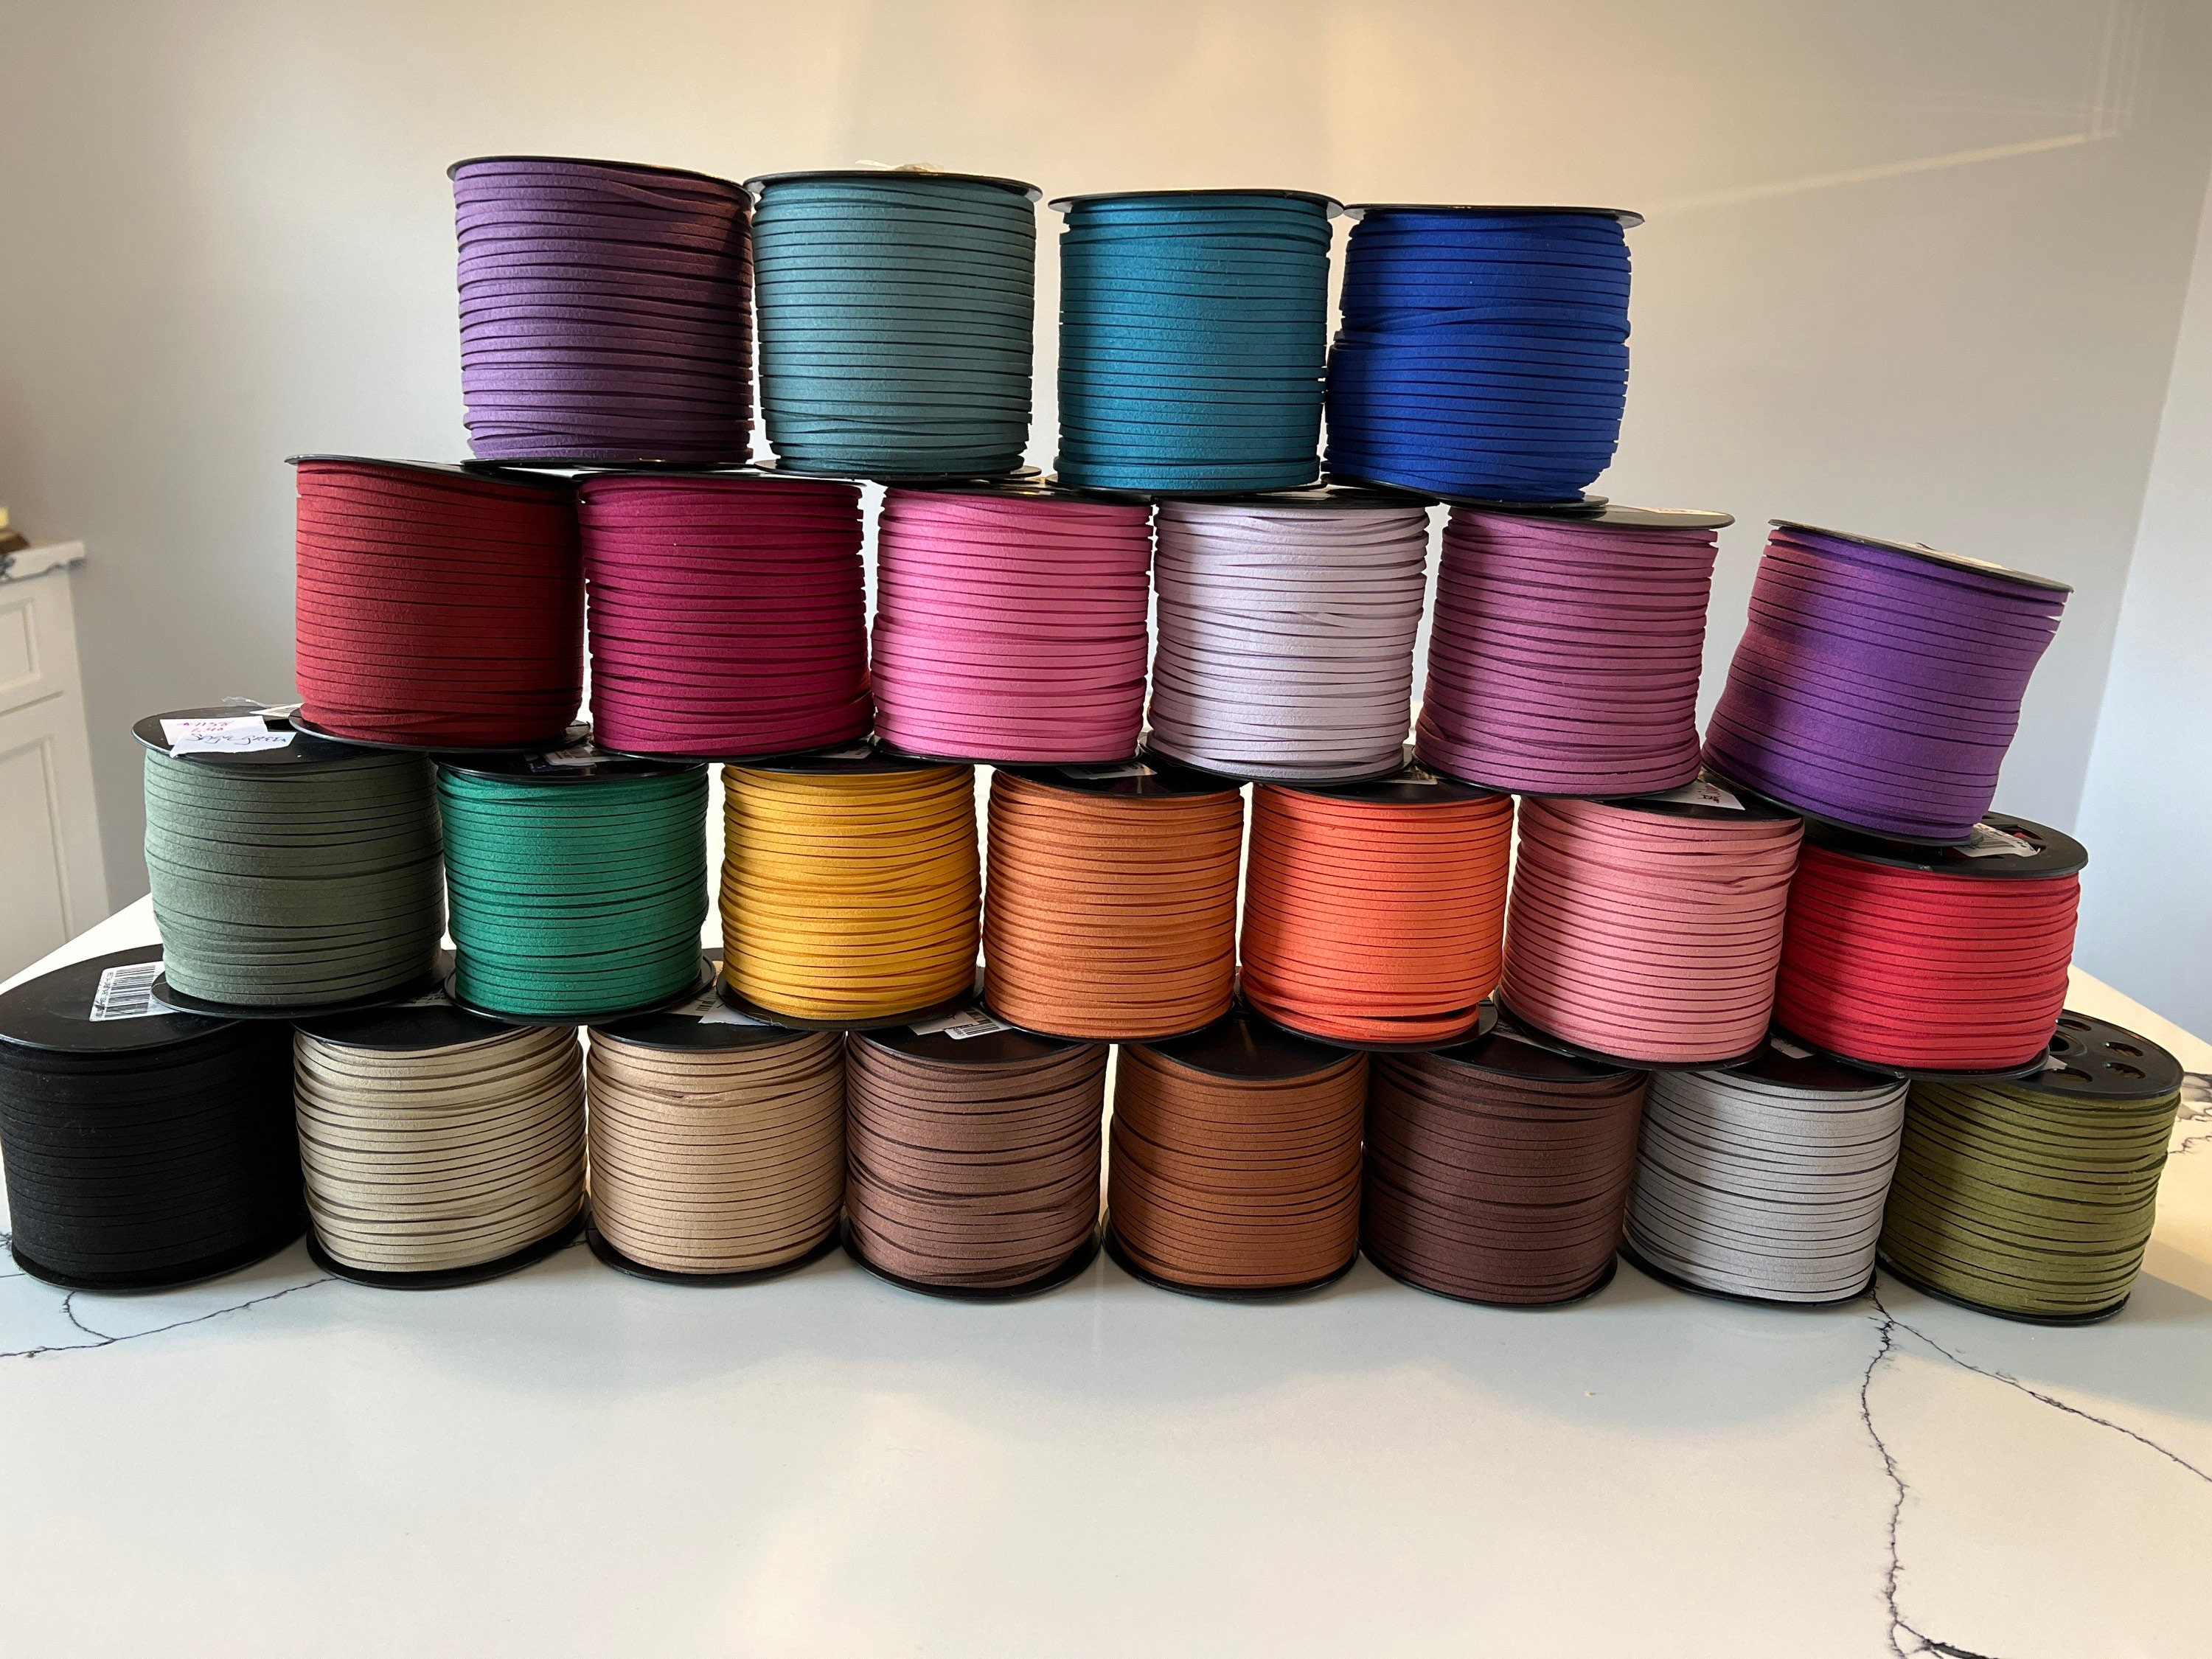 Cuerda de gamuza, 3 piezas de cuerda de cuero sintético (0.118 in, 3  colores)